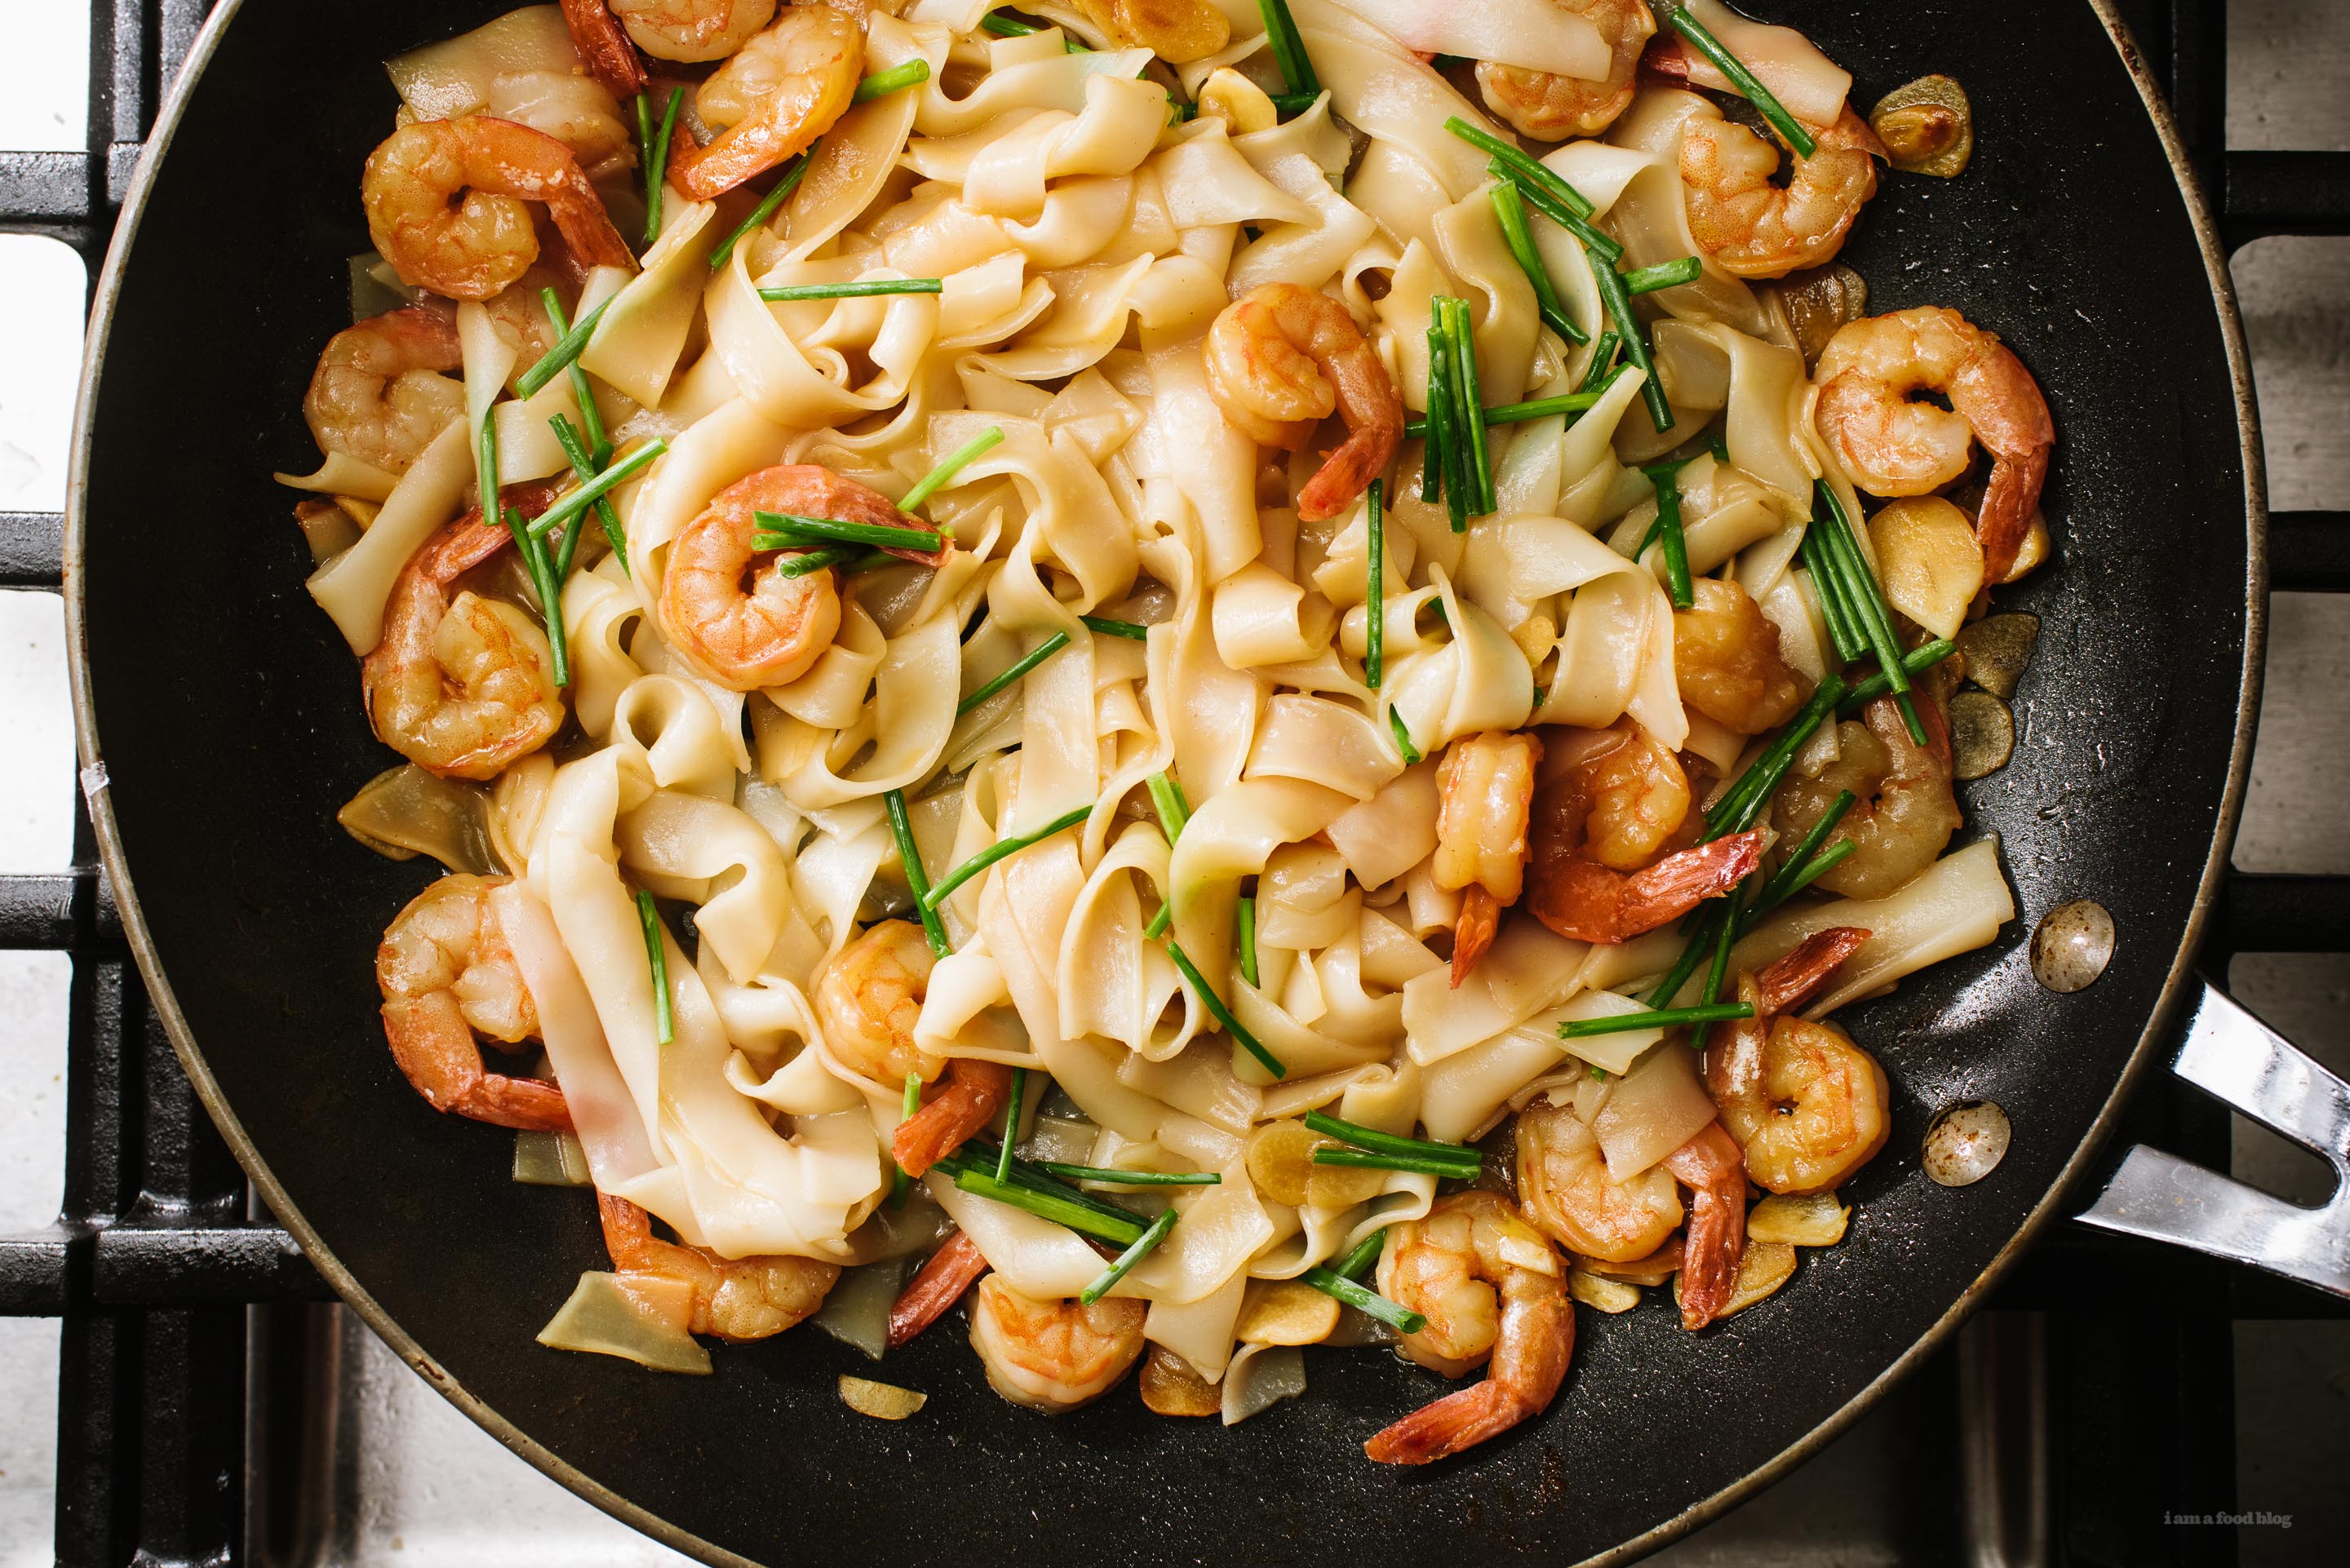 Easy 15 Minute Garlic Shrimp Scampi Chow Fun Noodles Recipe | www.iamafoodblog.com